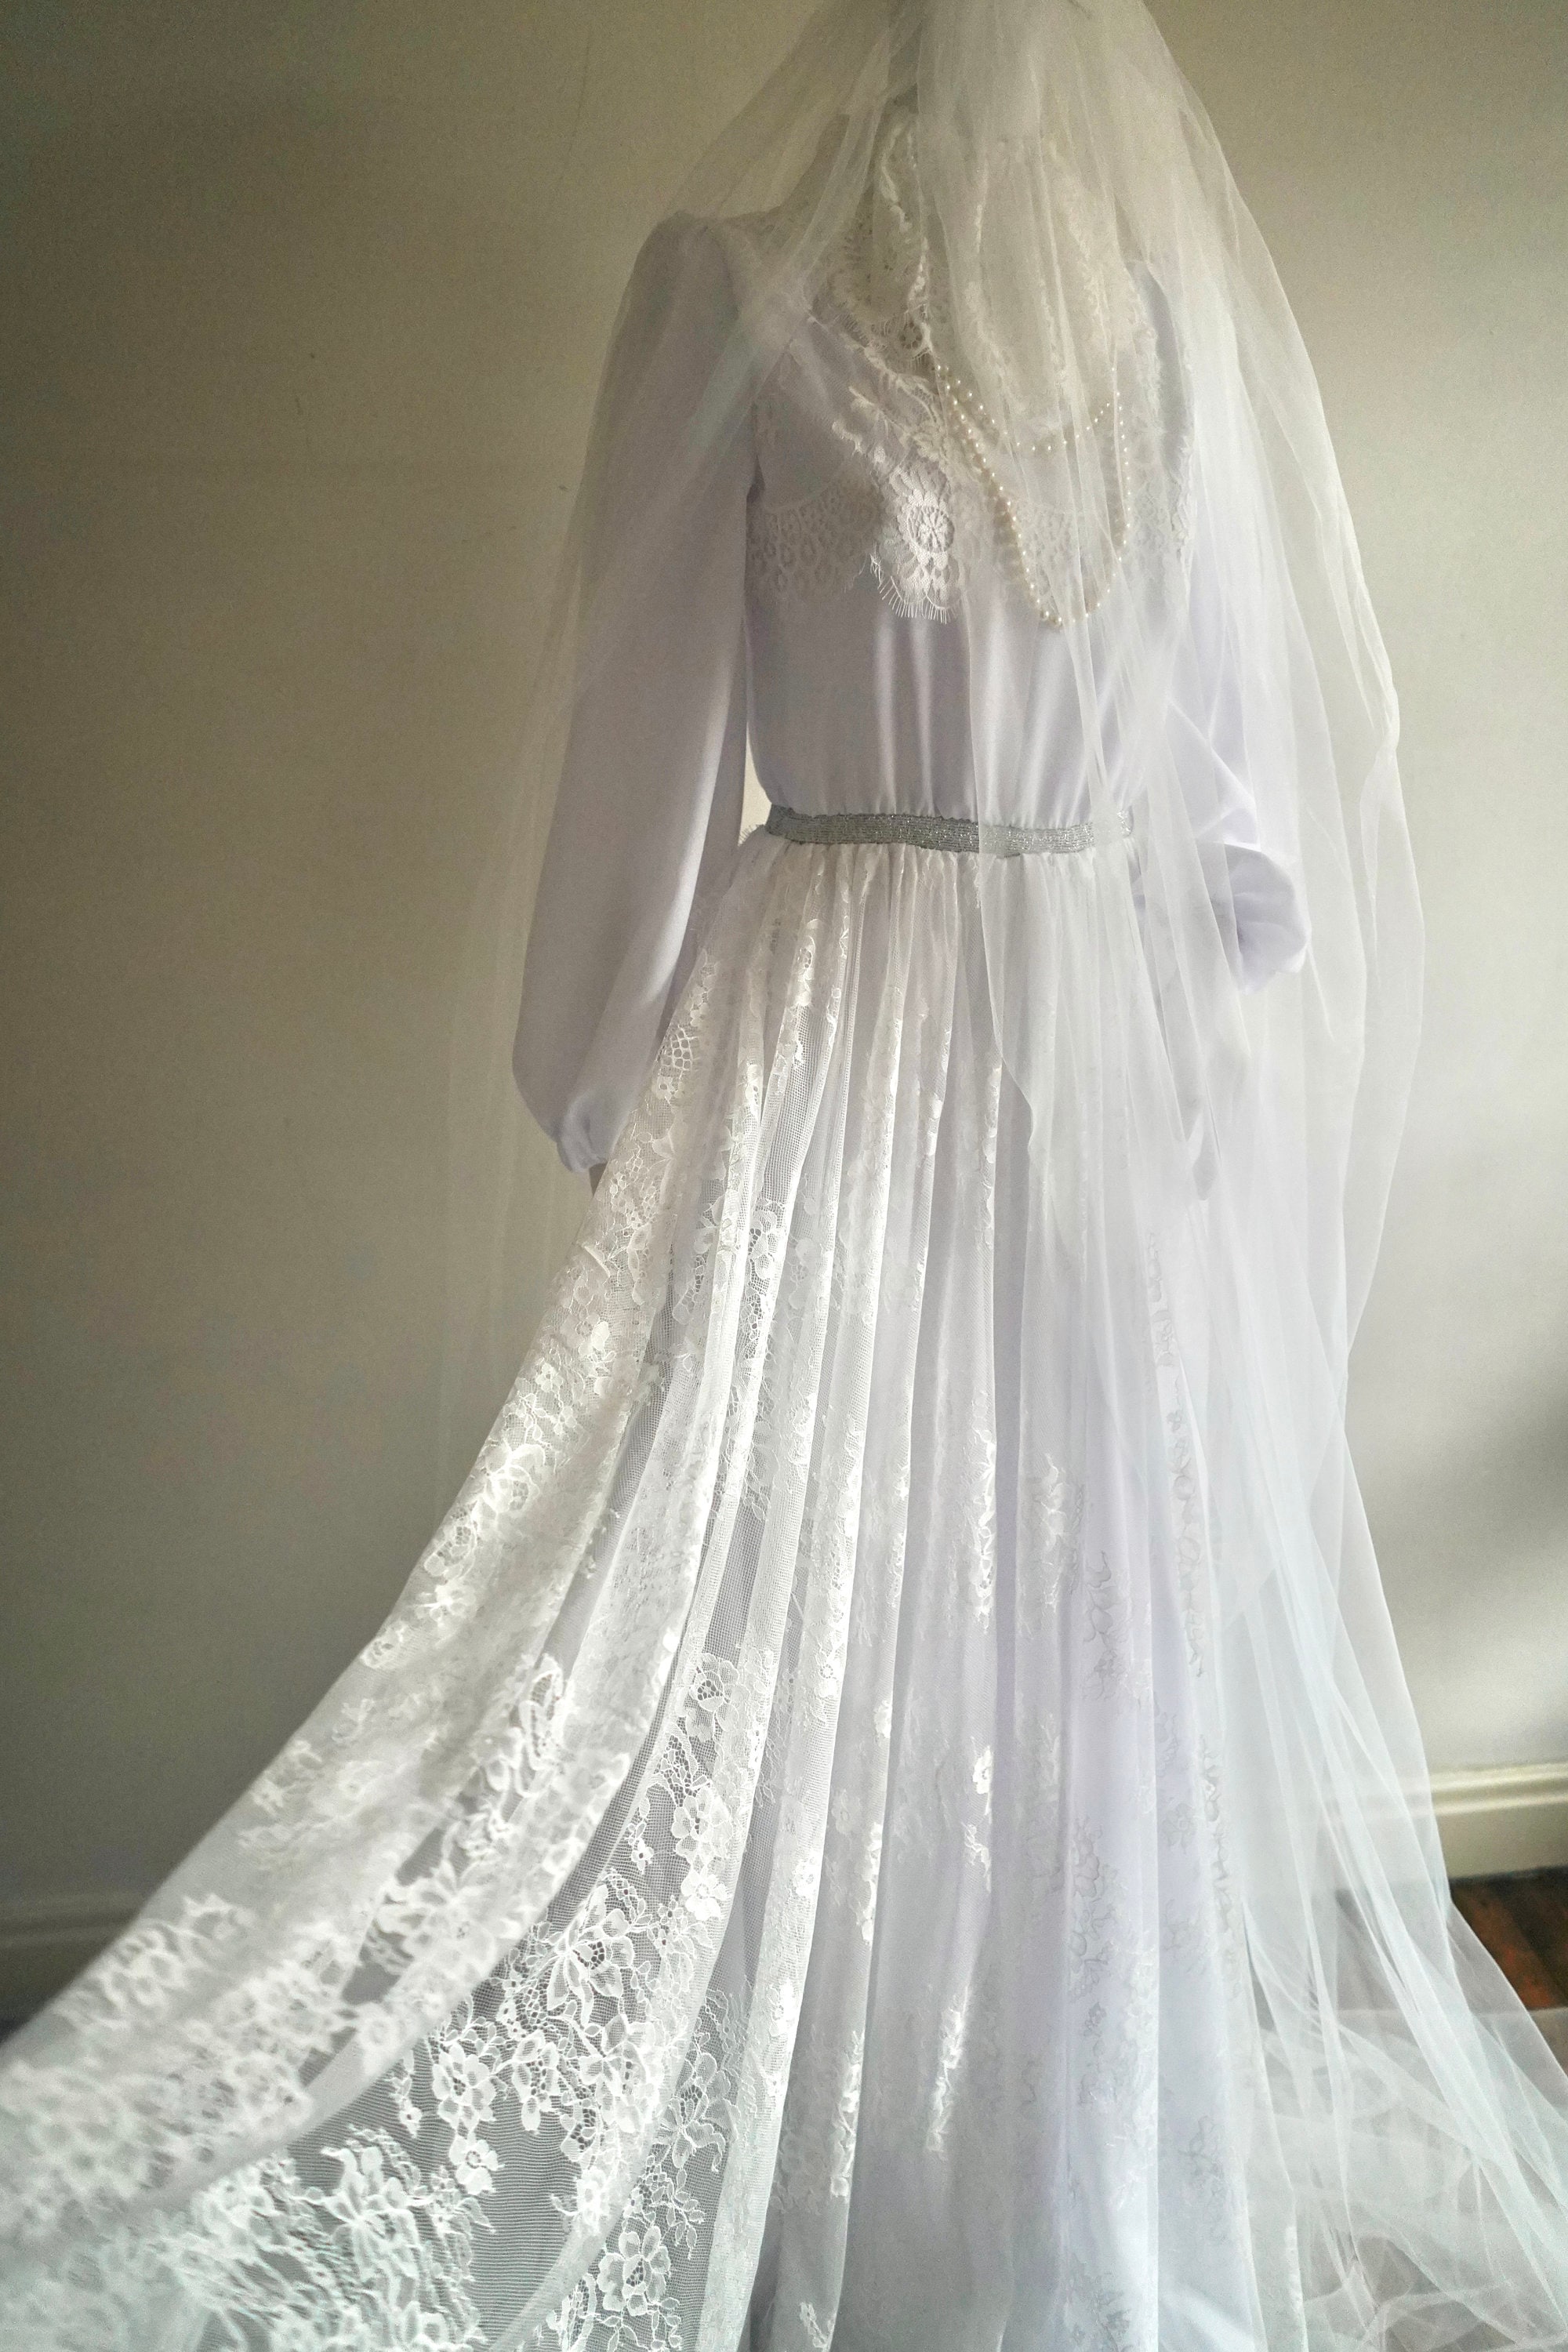 LMSXCT Women's Deluxe Victorian Ghost Bride Costume Halloween Cosplay  Outfits Zombie Bride Vampire Horror Fancy Dress